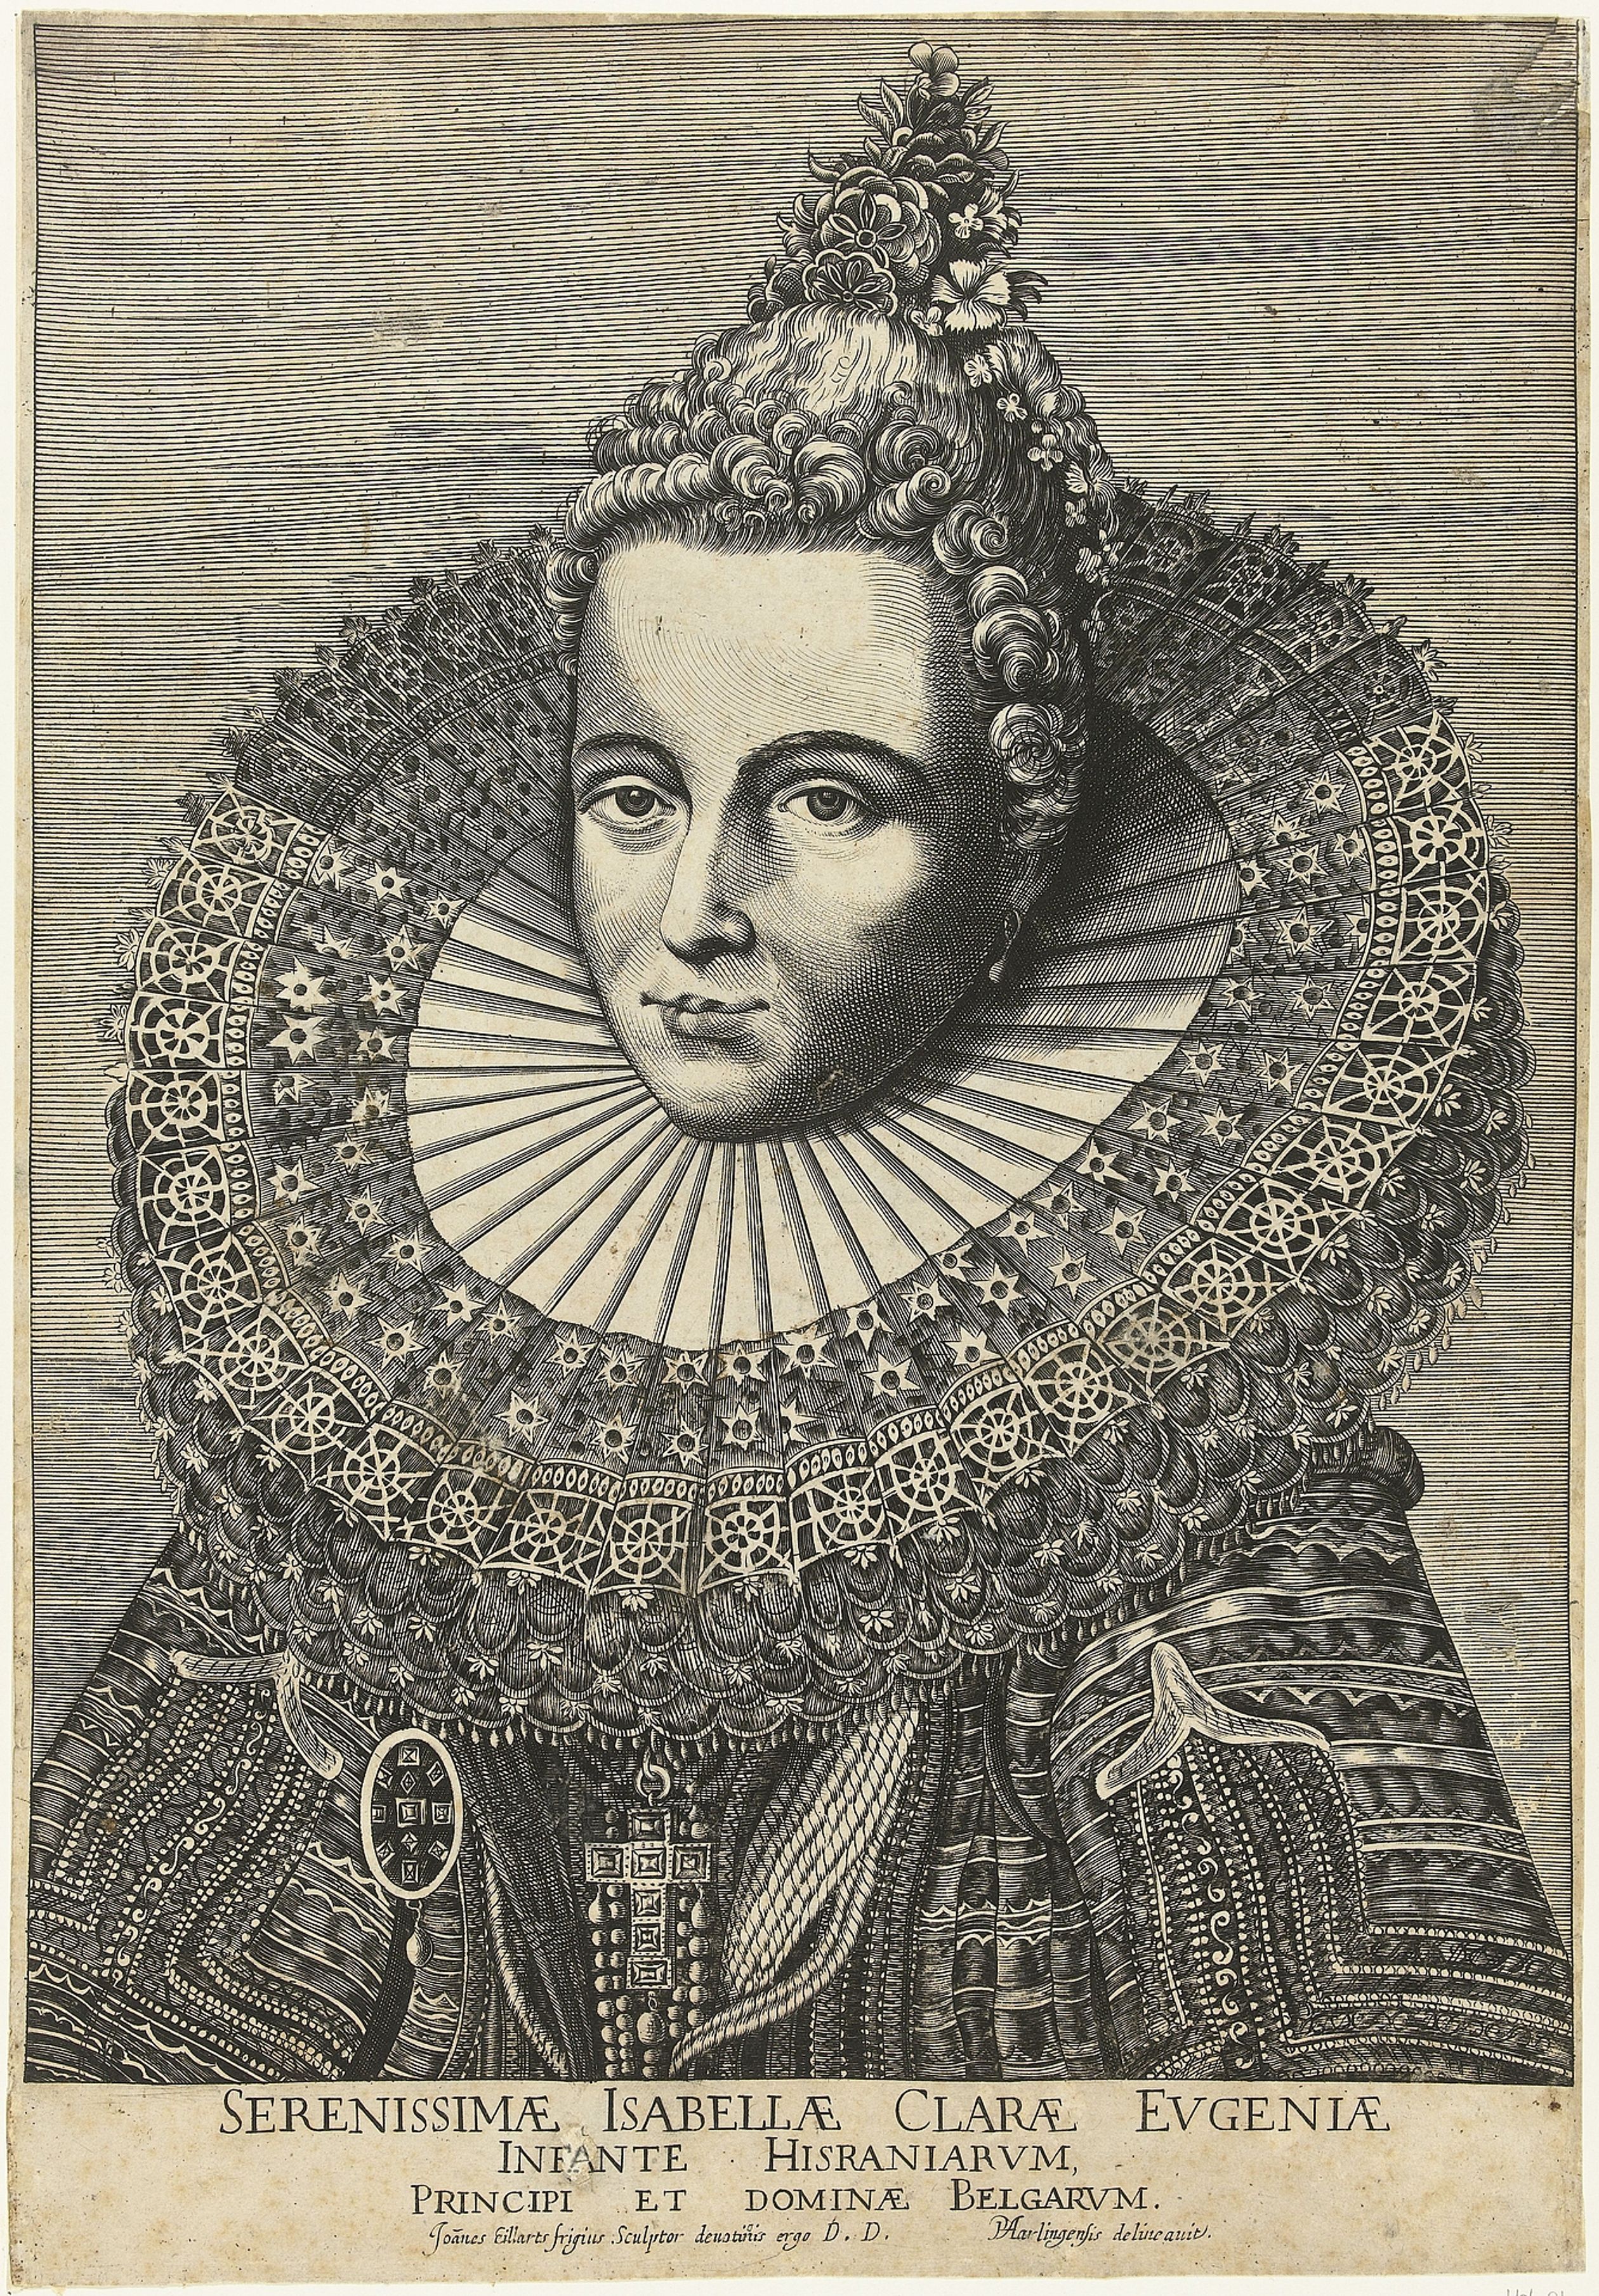 Isabella van Spanje, c. 1600-1650.